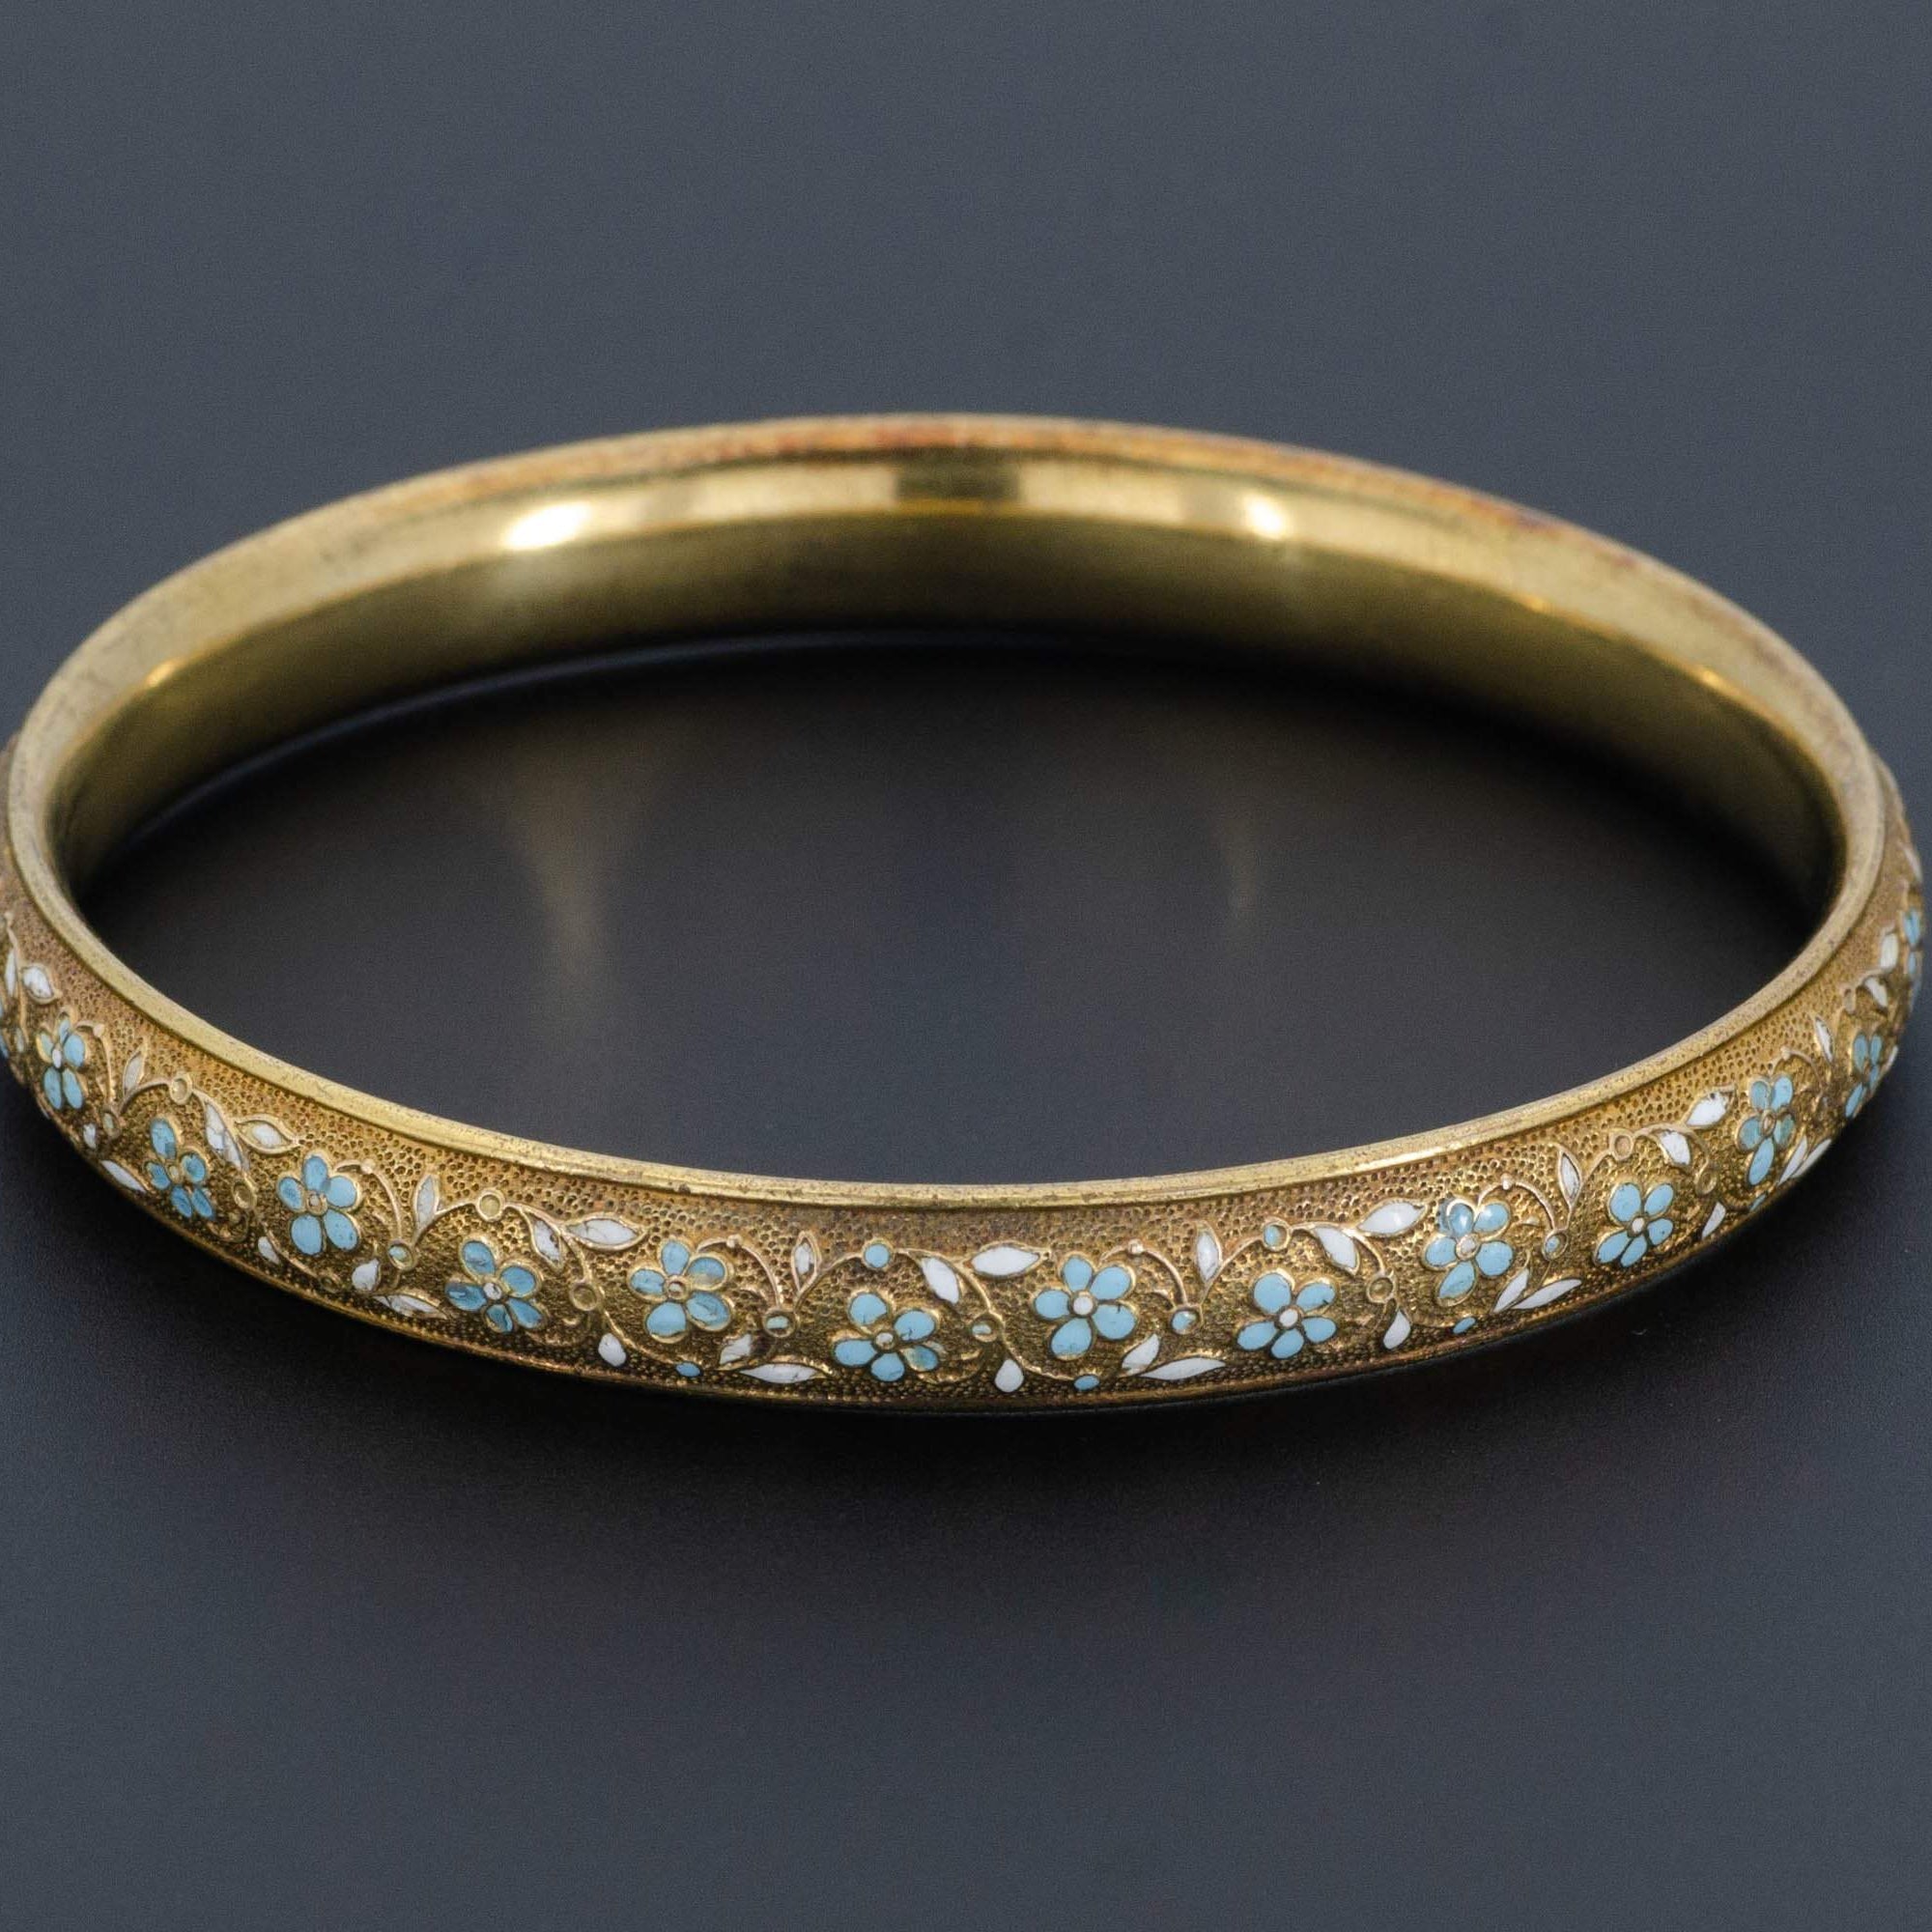 Antique Gold Bangle | 14k Gold Bangle Bracelet by Krementz | Gold & Enamel Forget-me-not Flower Bangle Bracelet